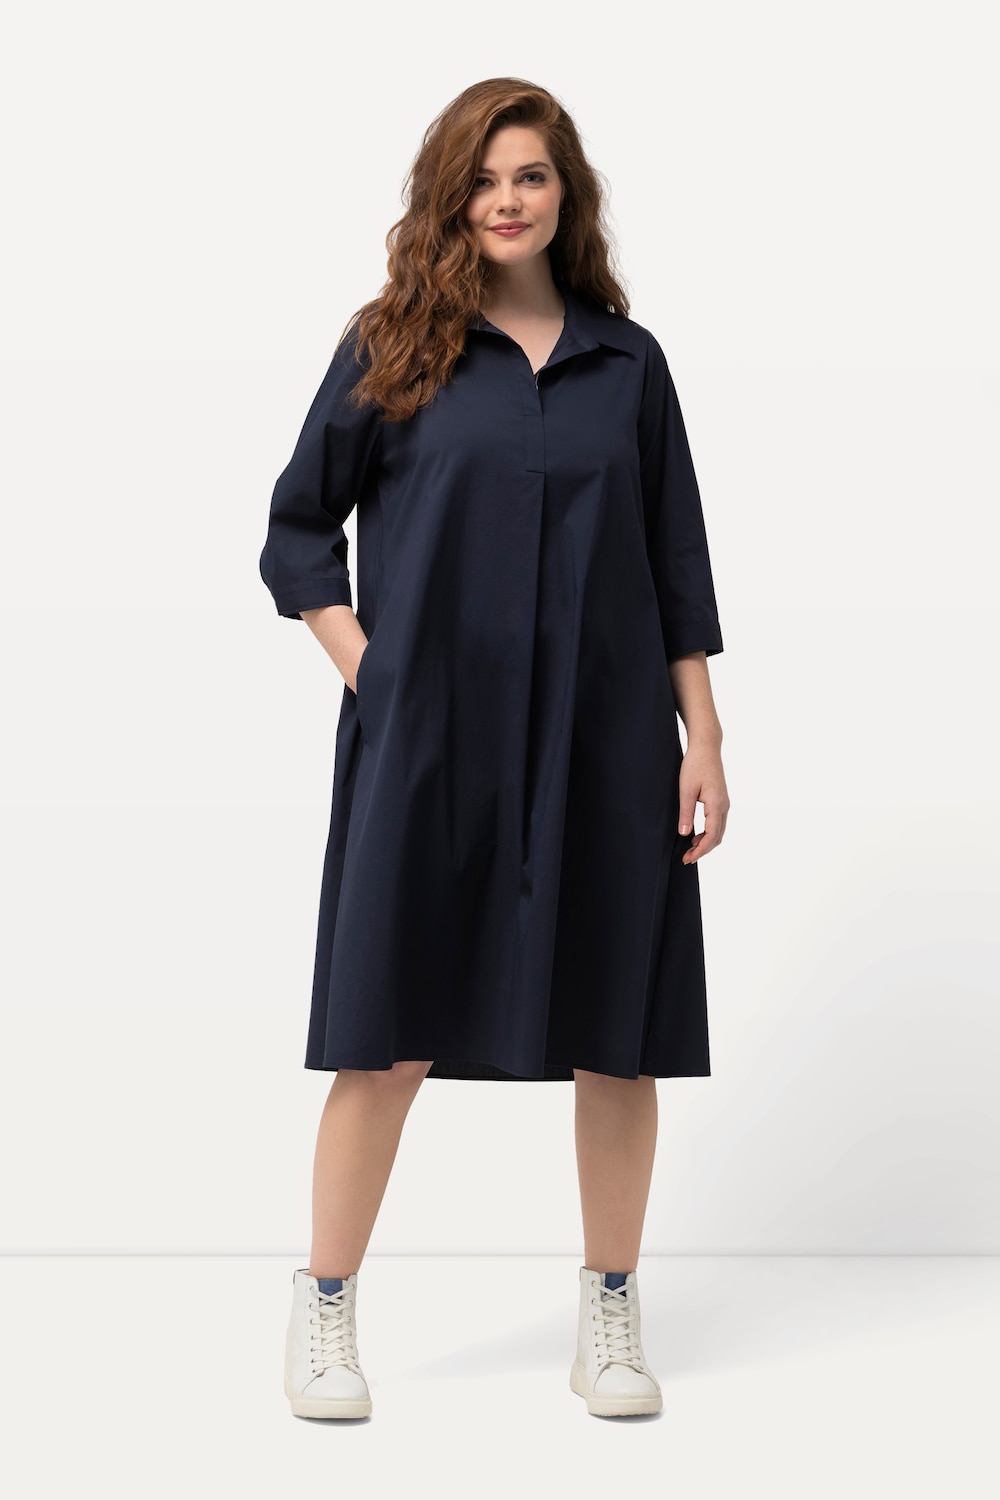 grandes tailles robe tunique à manches 3/4, femmes, bleu, taille: 44/46, coton/fibres synthétiques, ulla popken